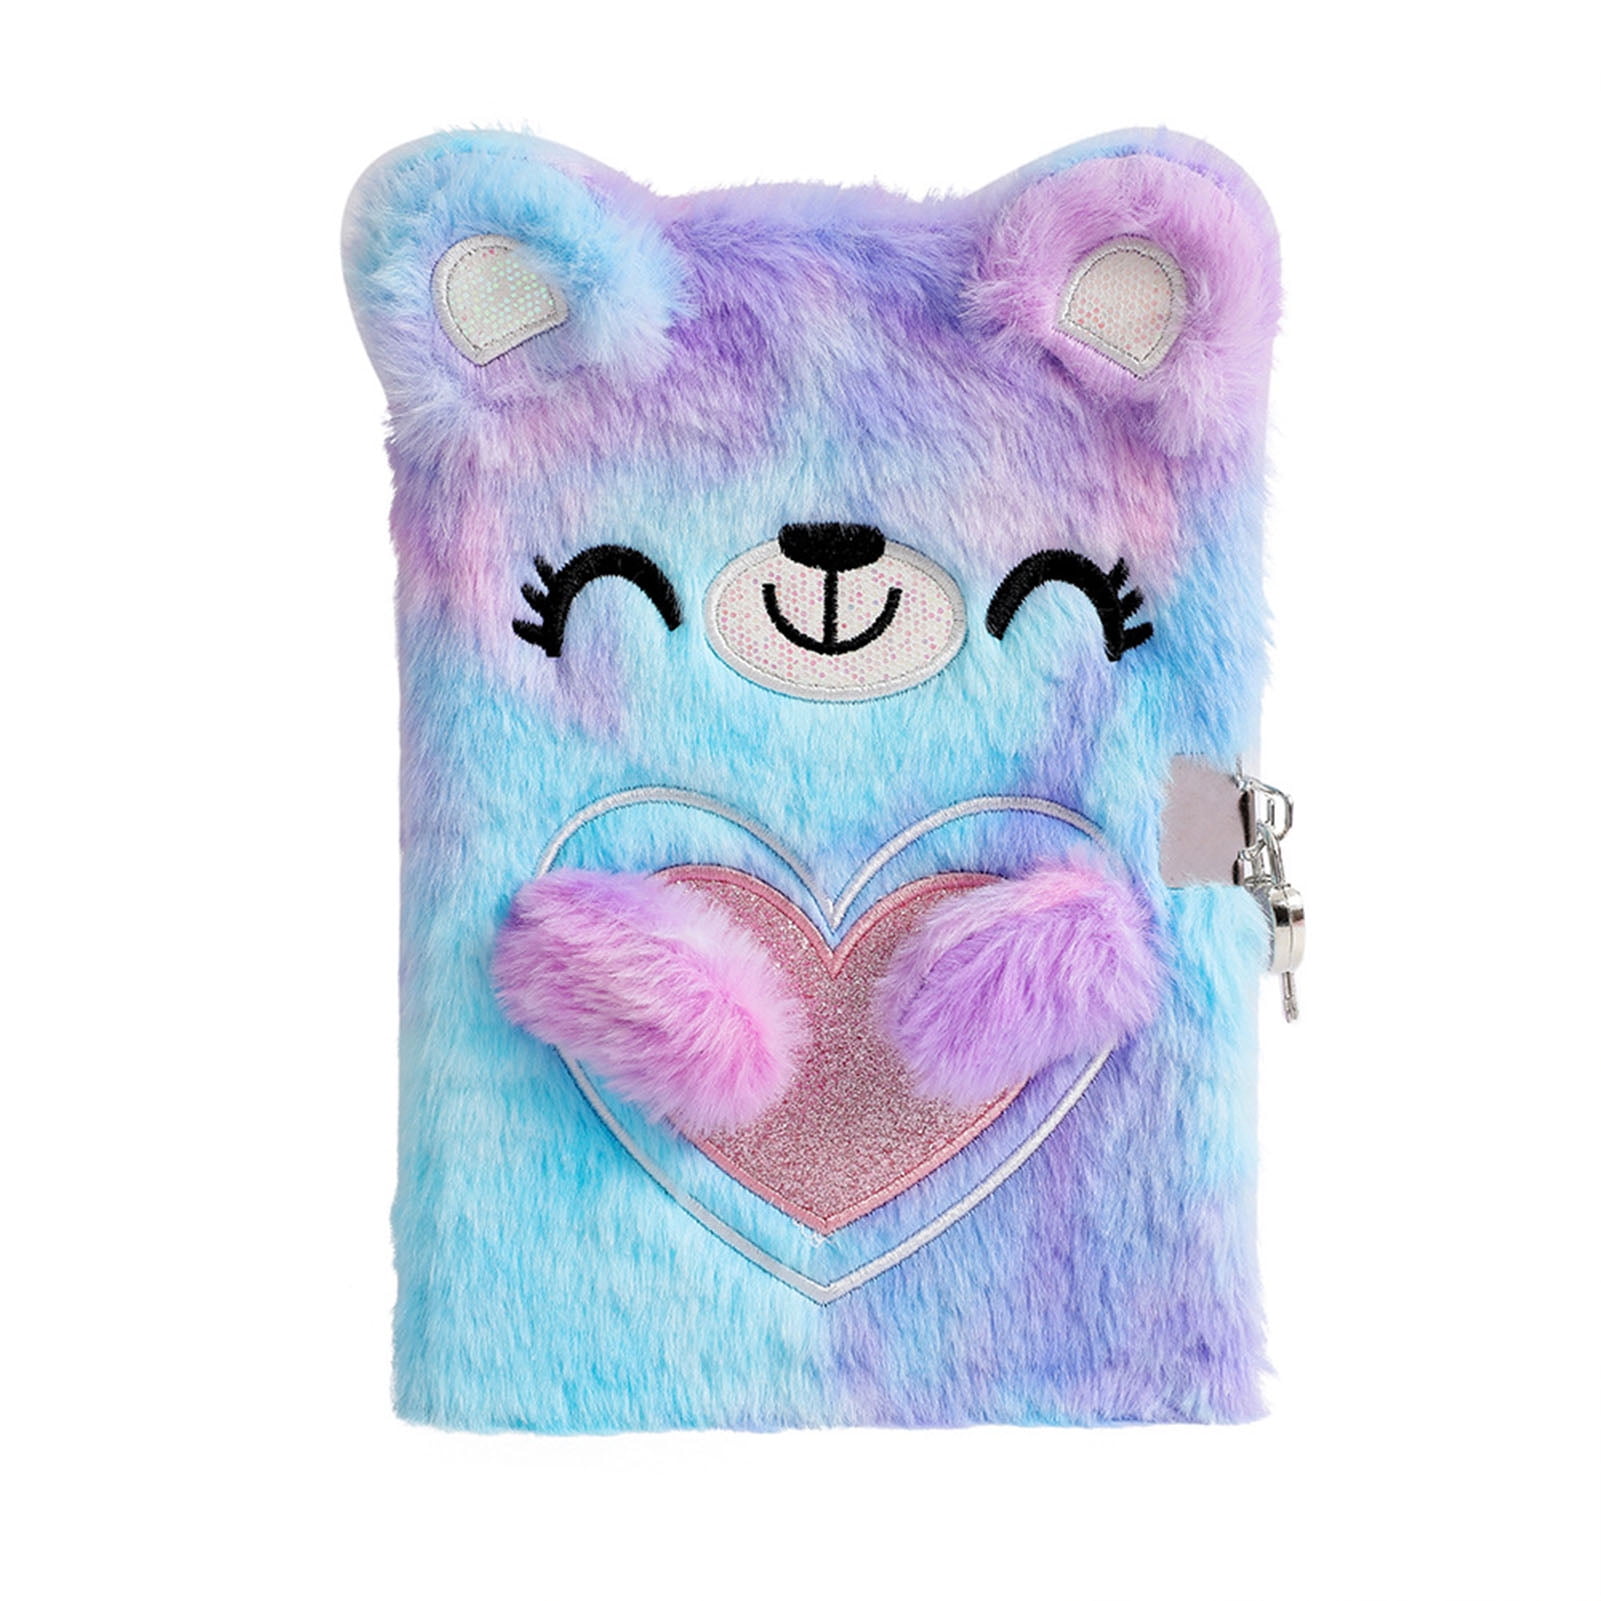 Kawaii Cute Fluffy Plush Cat Journal Notebook - Diary